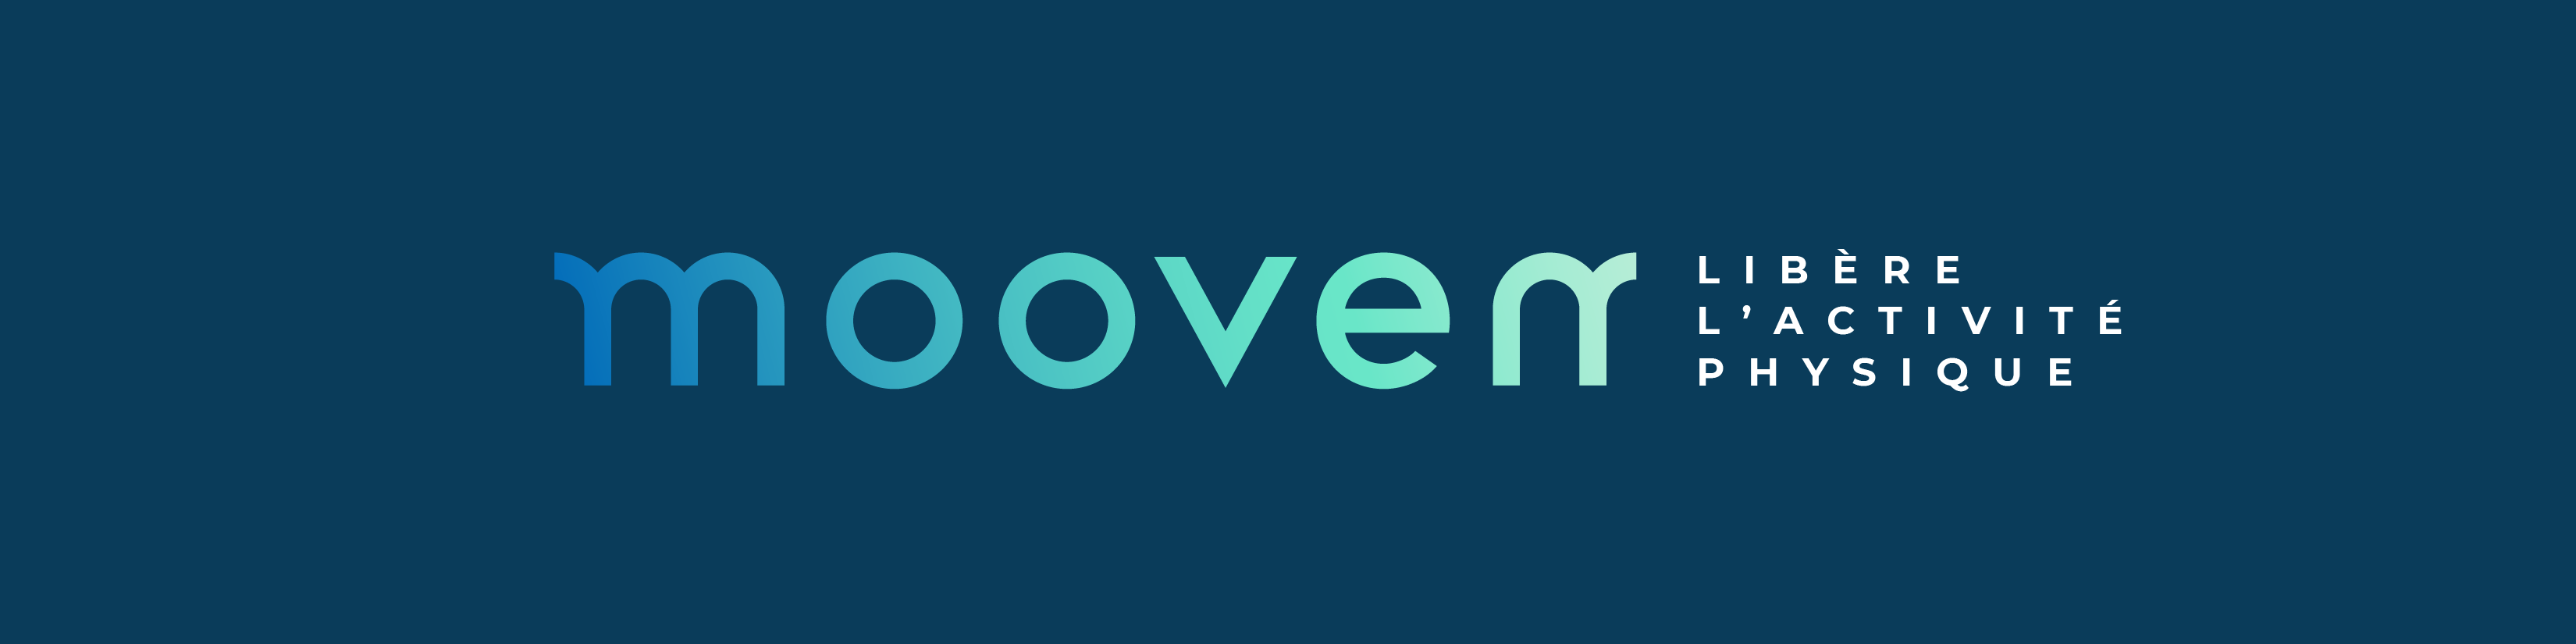 Logo_Mooven.png